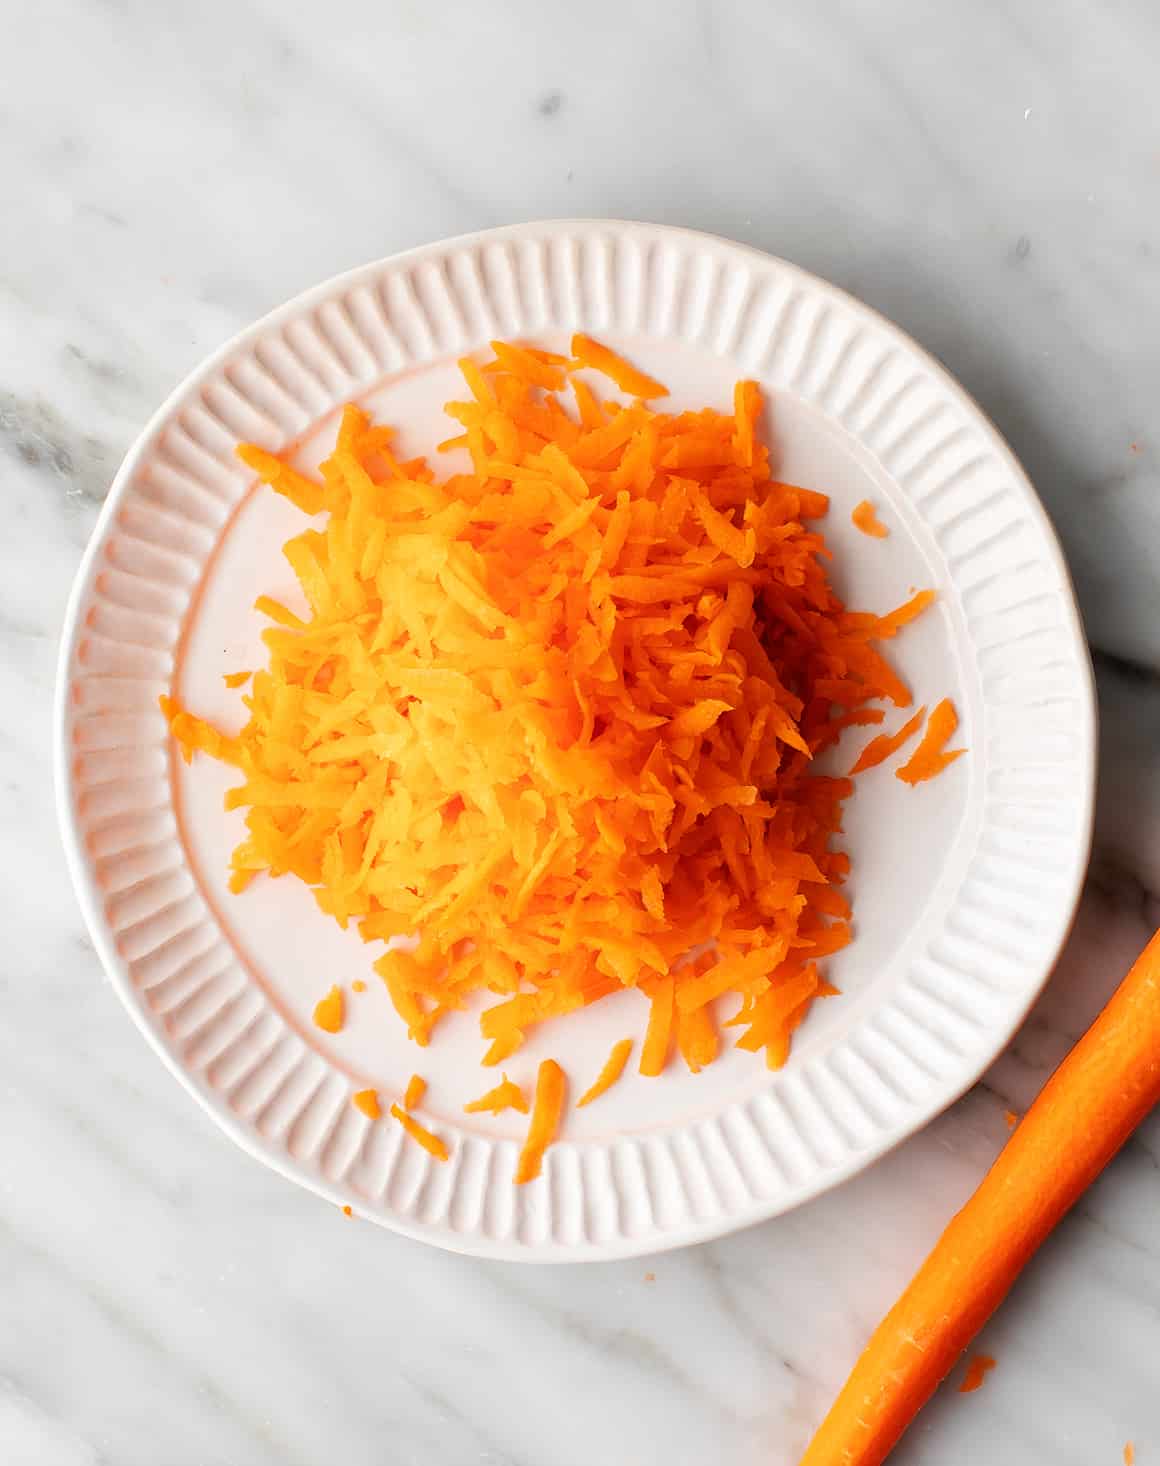 Plate of shredded carrots